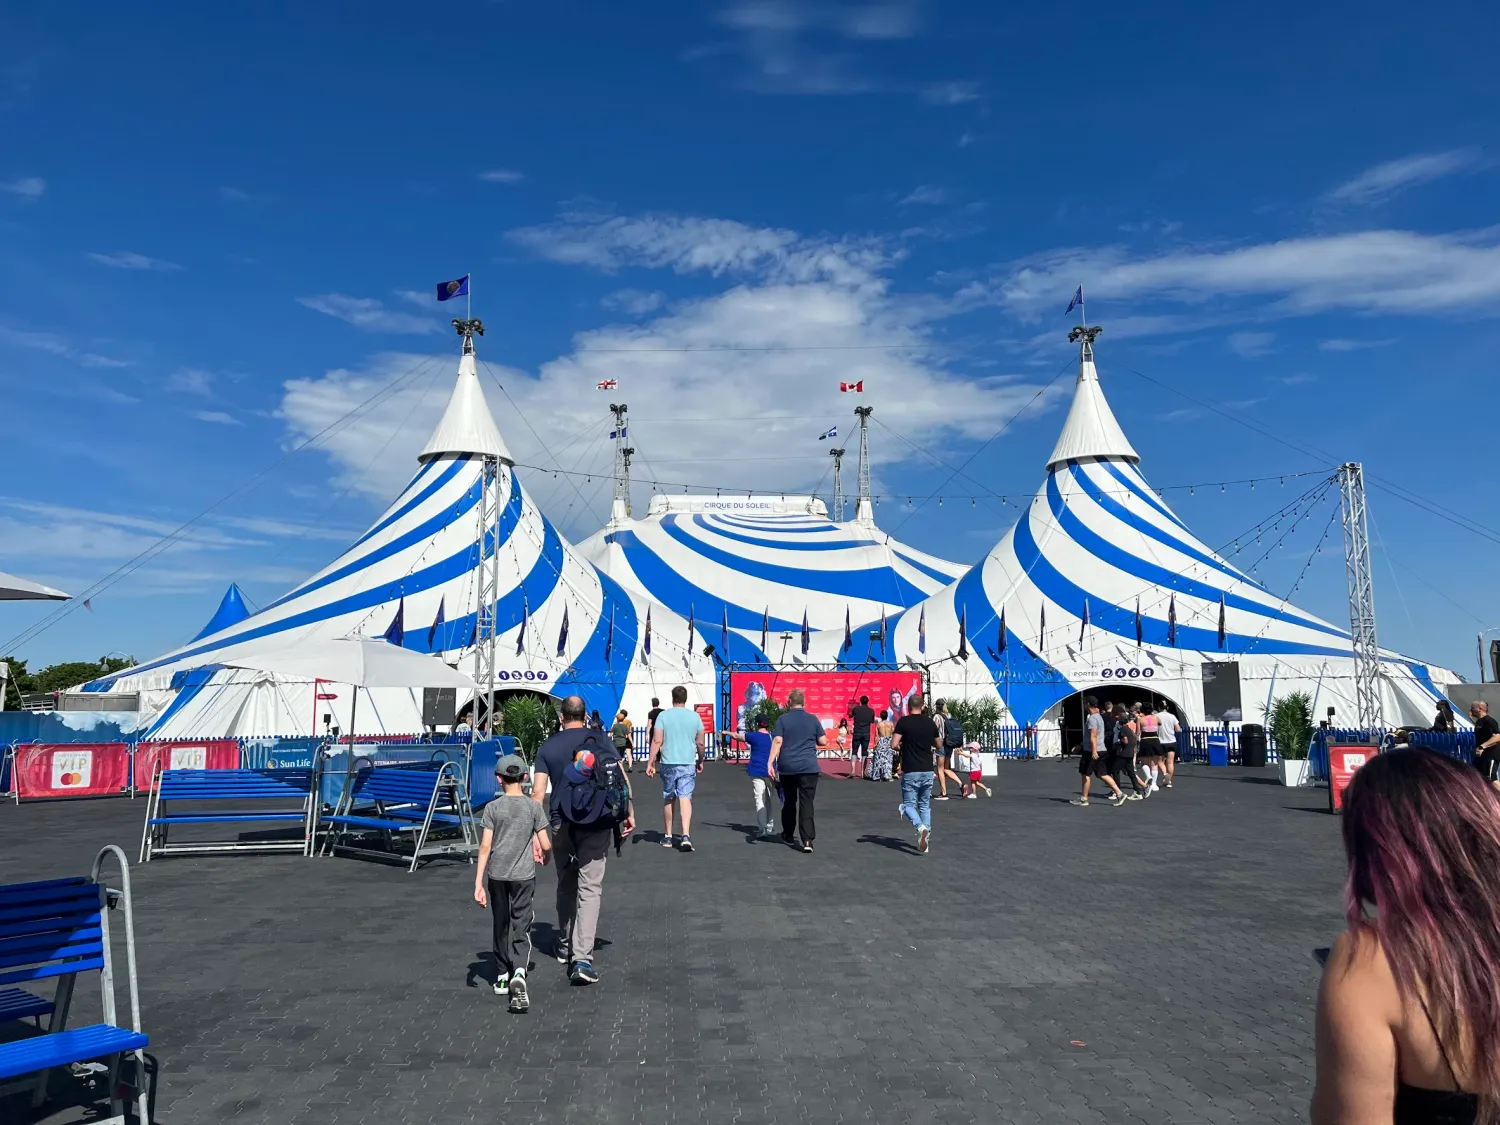 The Cirque du Soleil tent in Montréal.